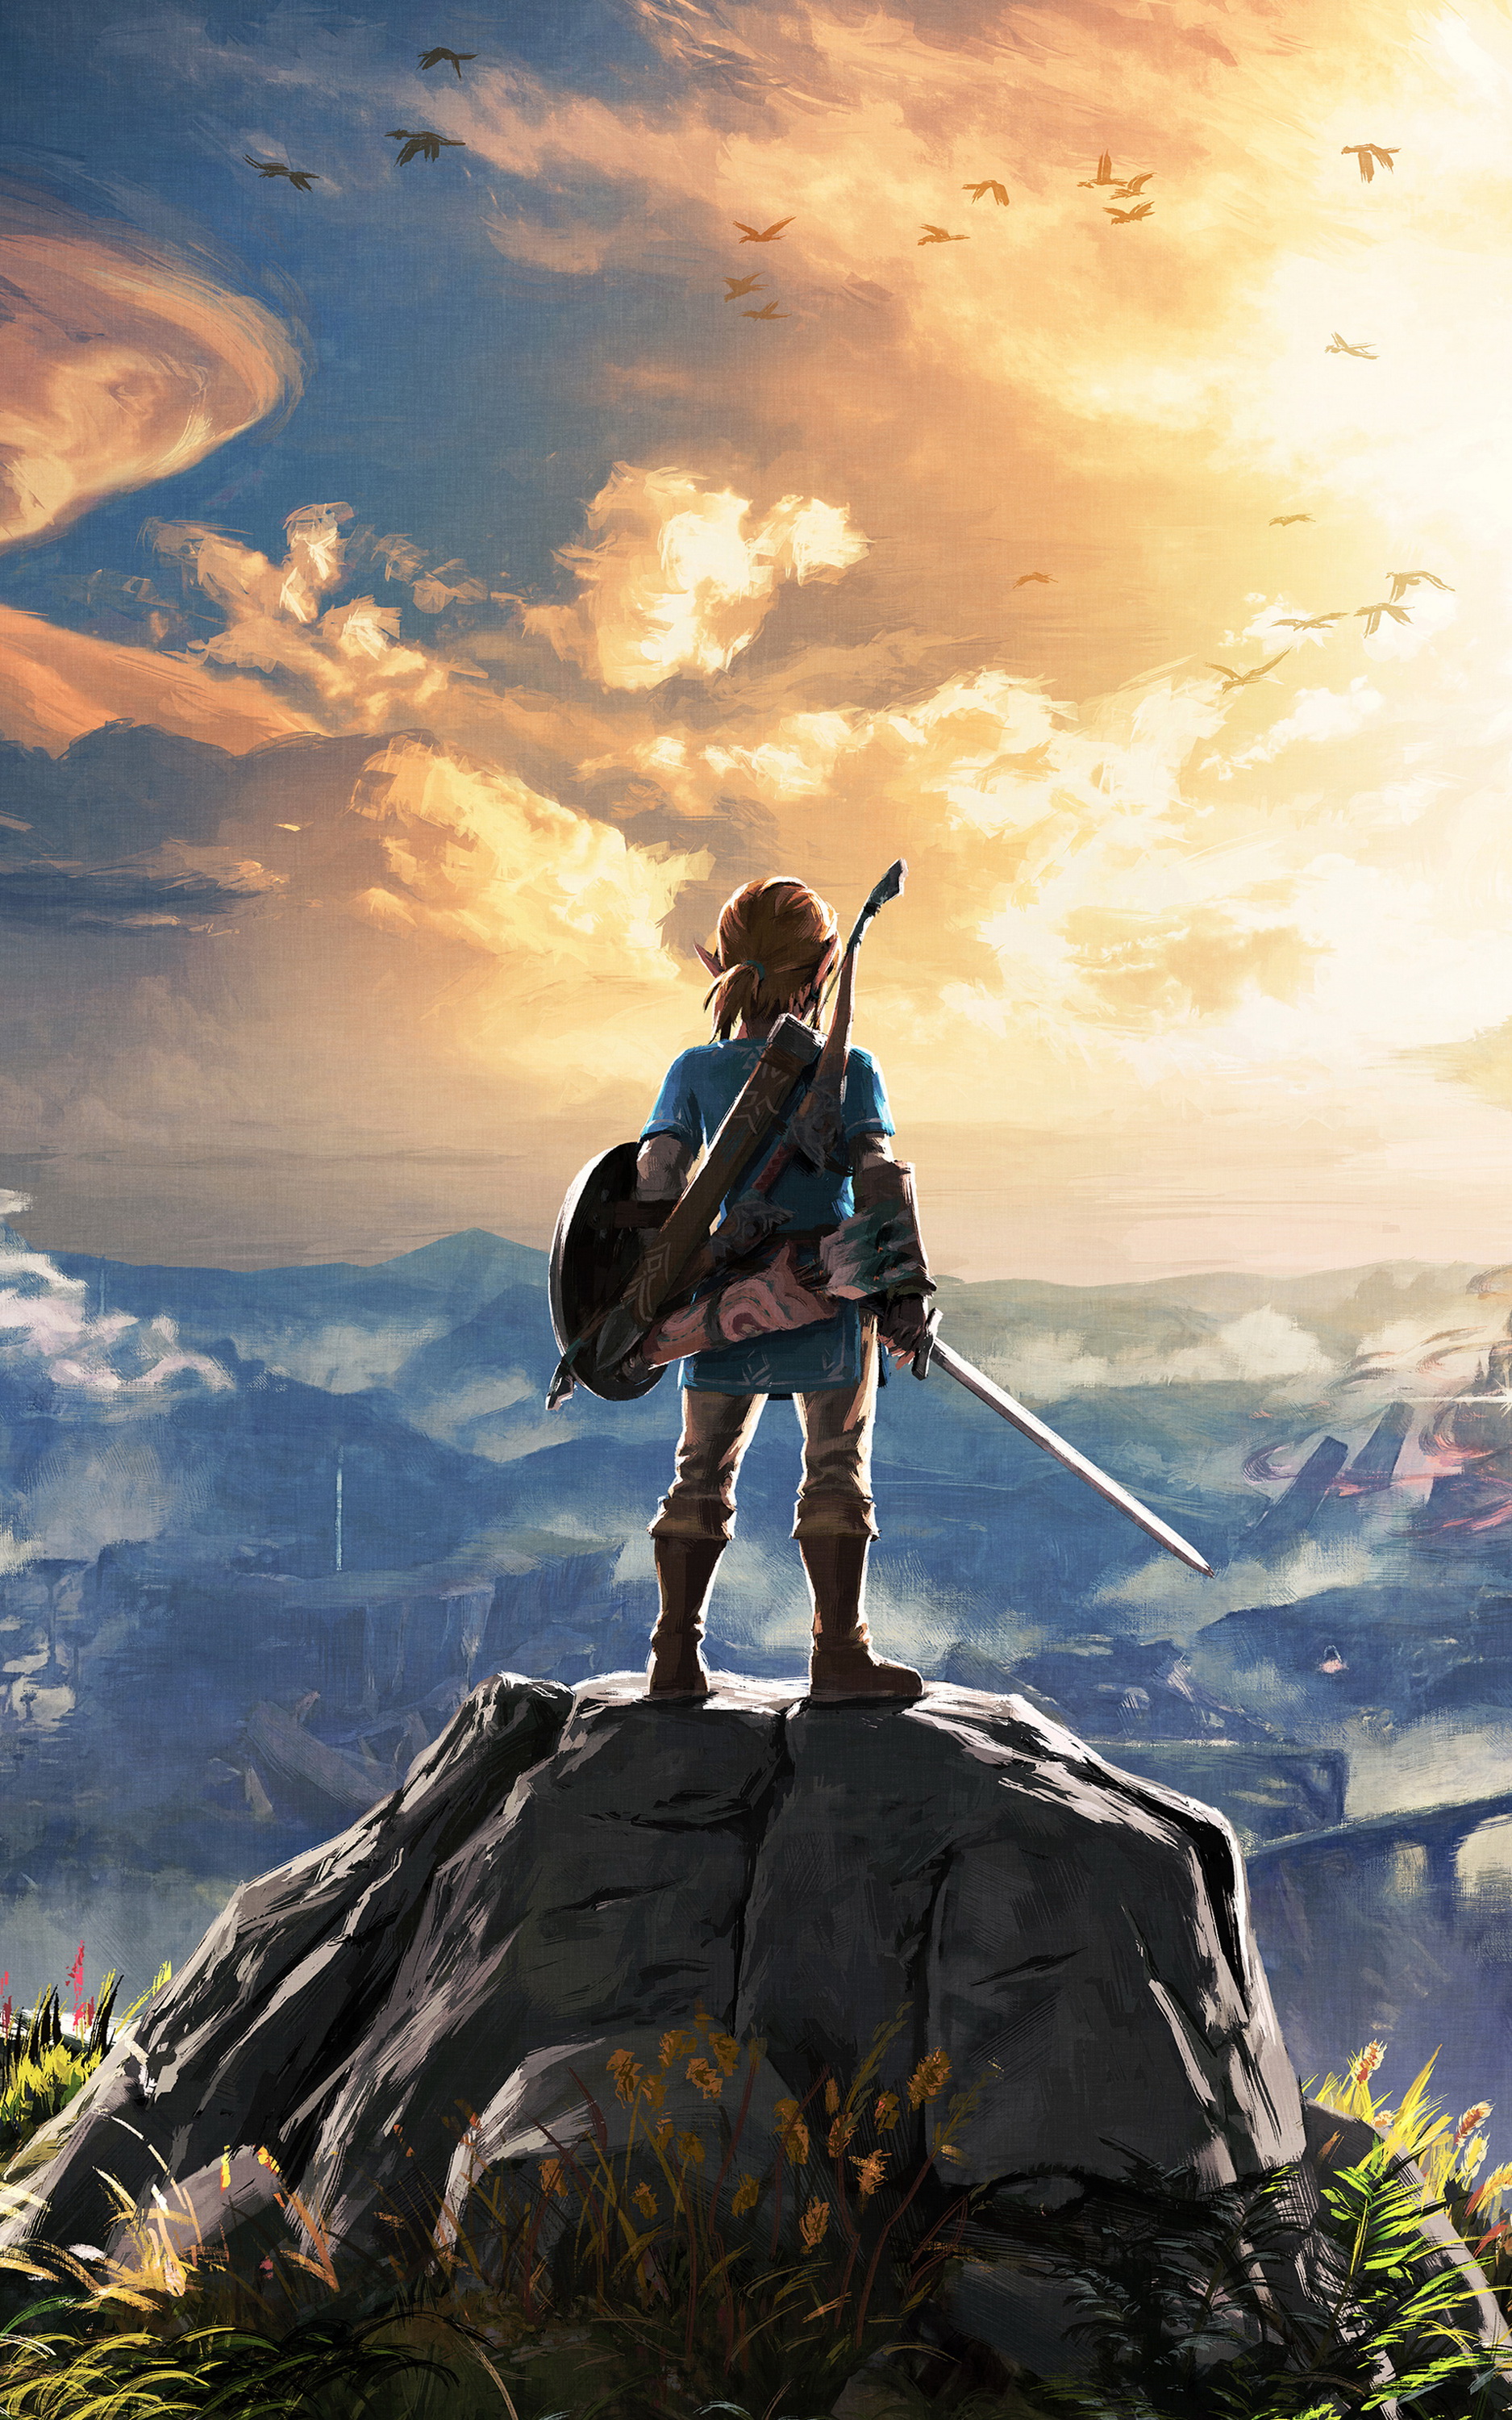 Legend of Zelda Mobile Wallpapers: Thoả sức sáng tạo và thể hiện đam mê của bạn với bộ sưu tập hình nền di động về Legend of Zelda. Với chất lượng cao cấp và nét rõ nét, hình nền sẽ cho bạn trải nghiệm đầy thú vị với cuộc phiêu lưu tuyệt vời của Link. Hãy xem ngay để có những trải nghiệm tuyệt vời nhất!